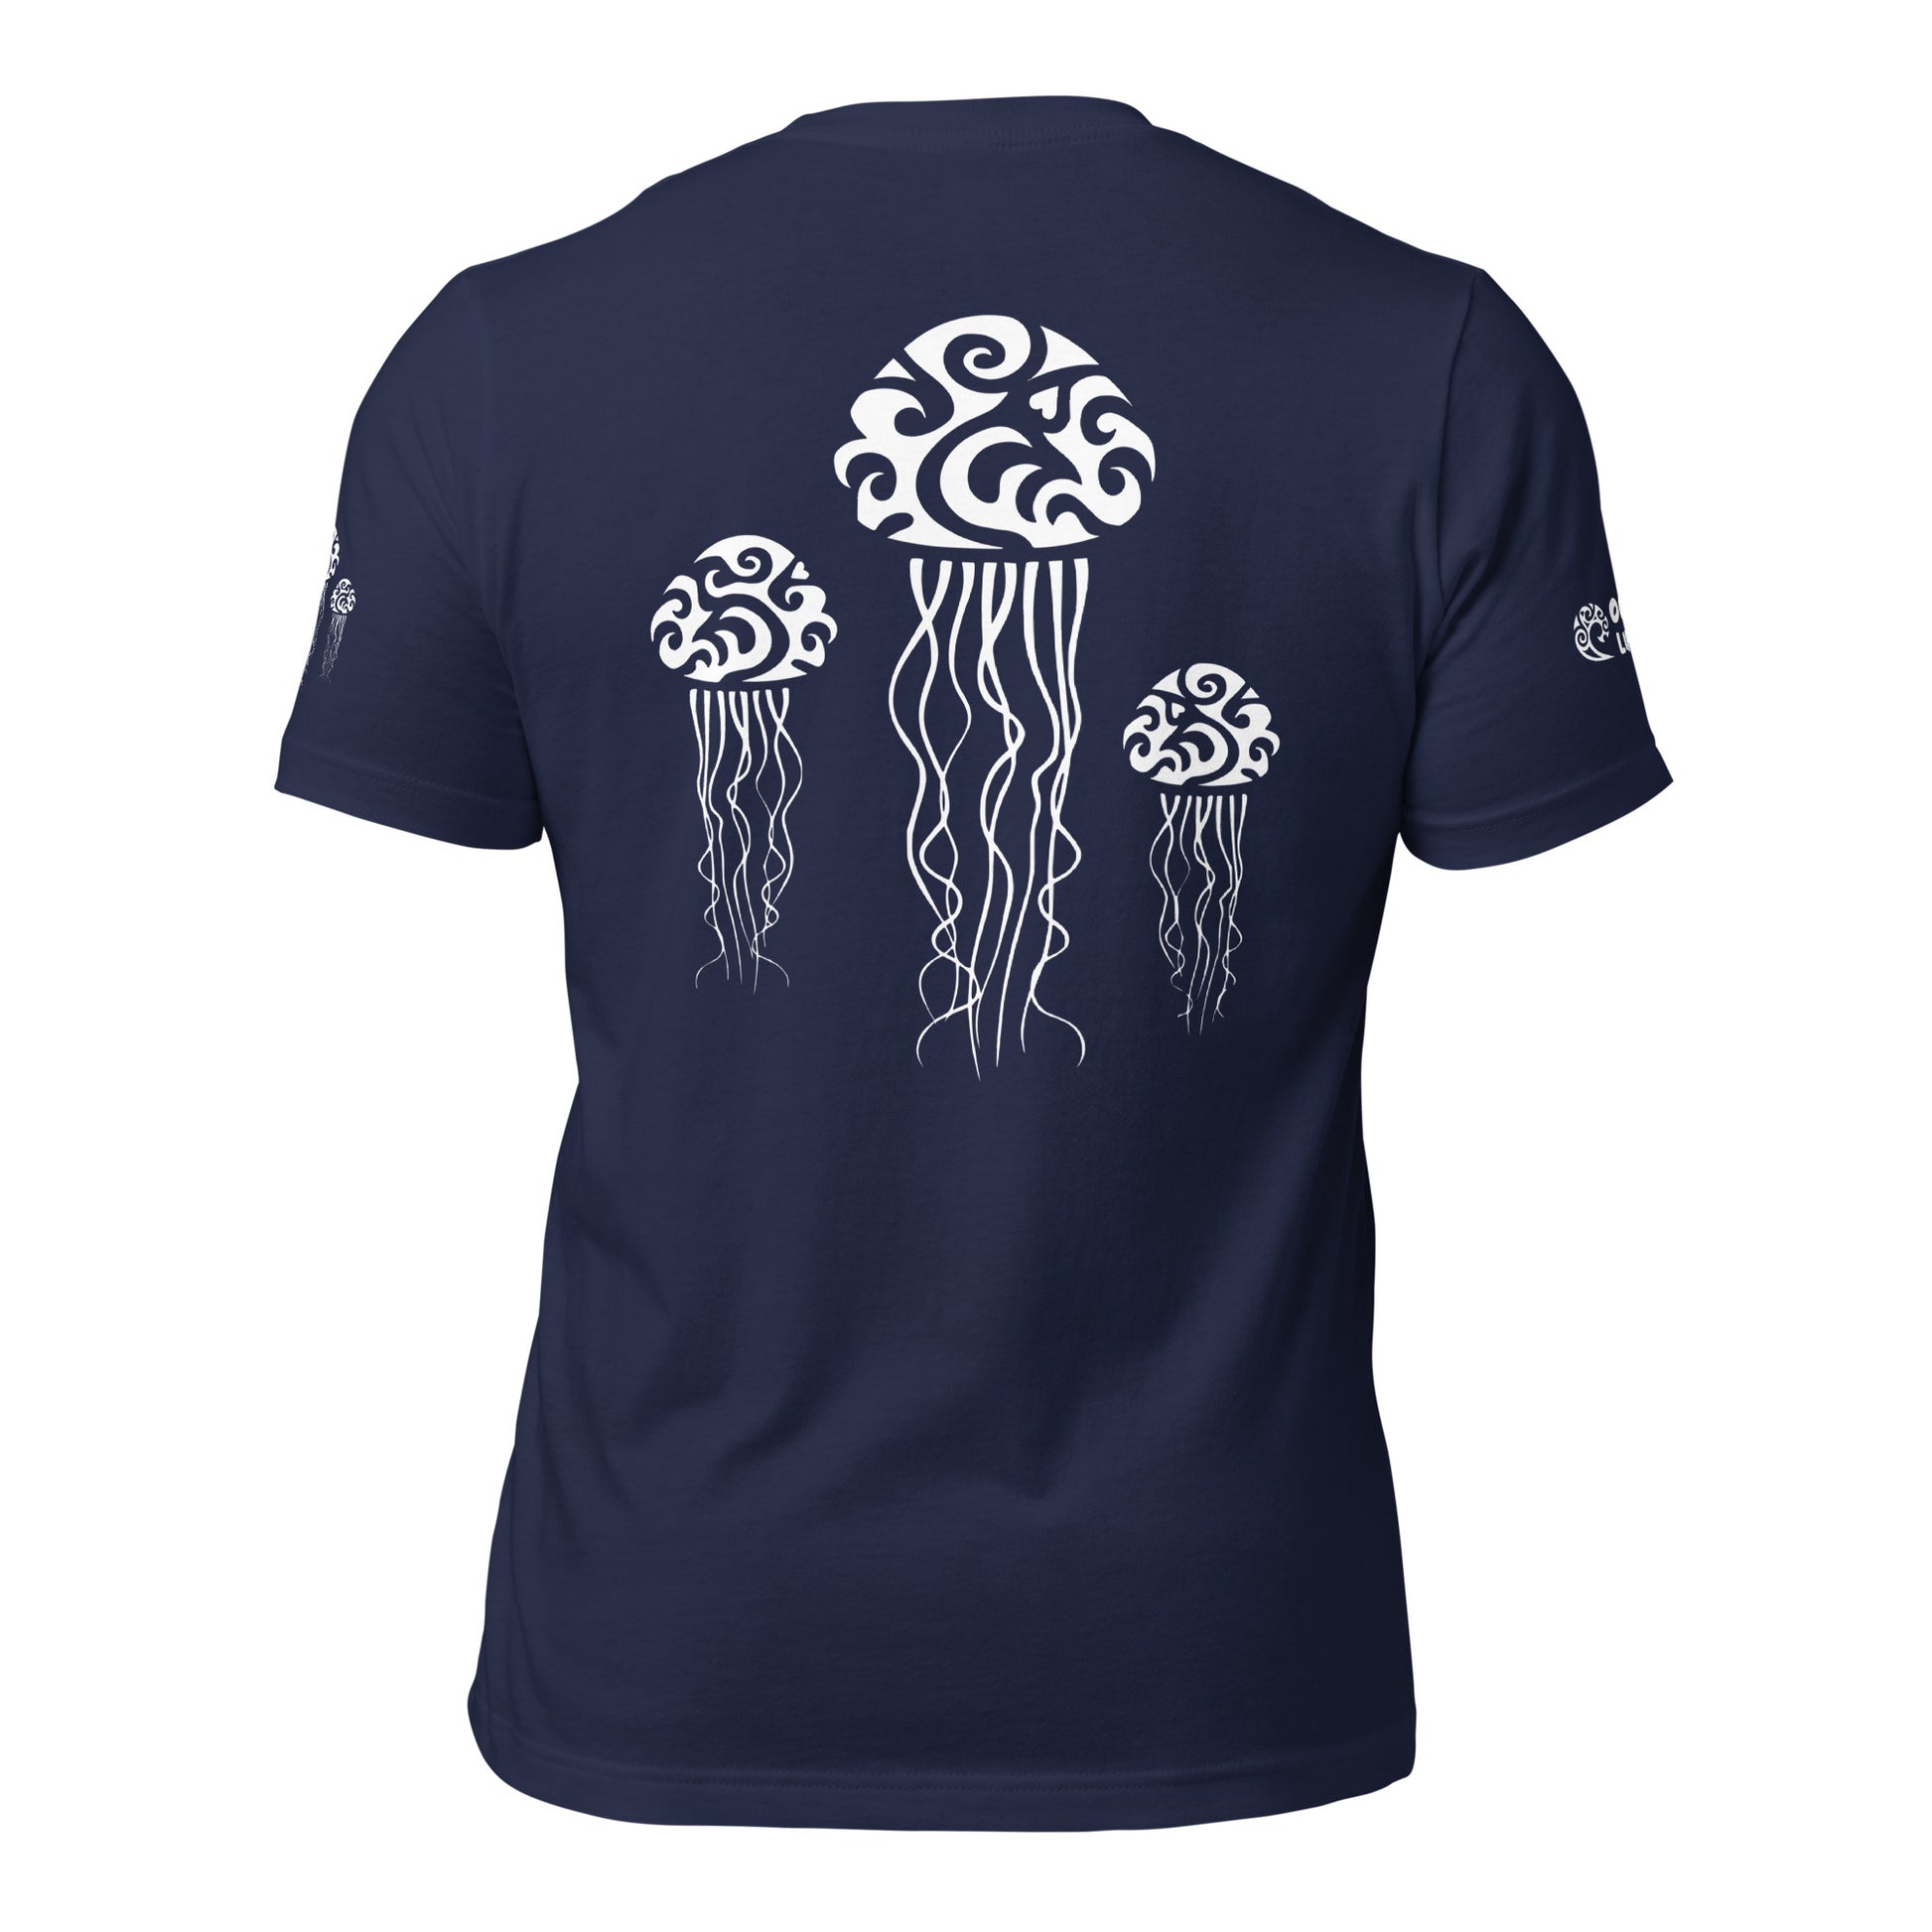 Polynesian T-shirt Jellyfish Tribal Samoan For Men and Women Back White on Navy